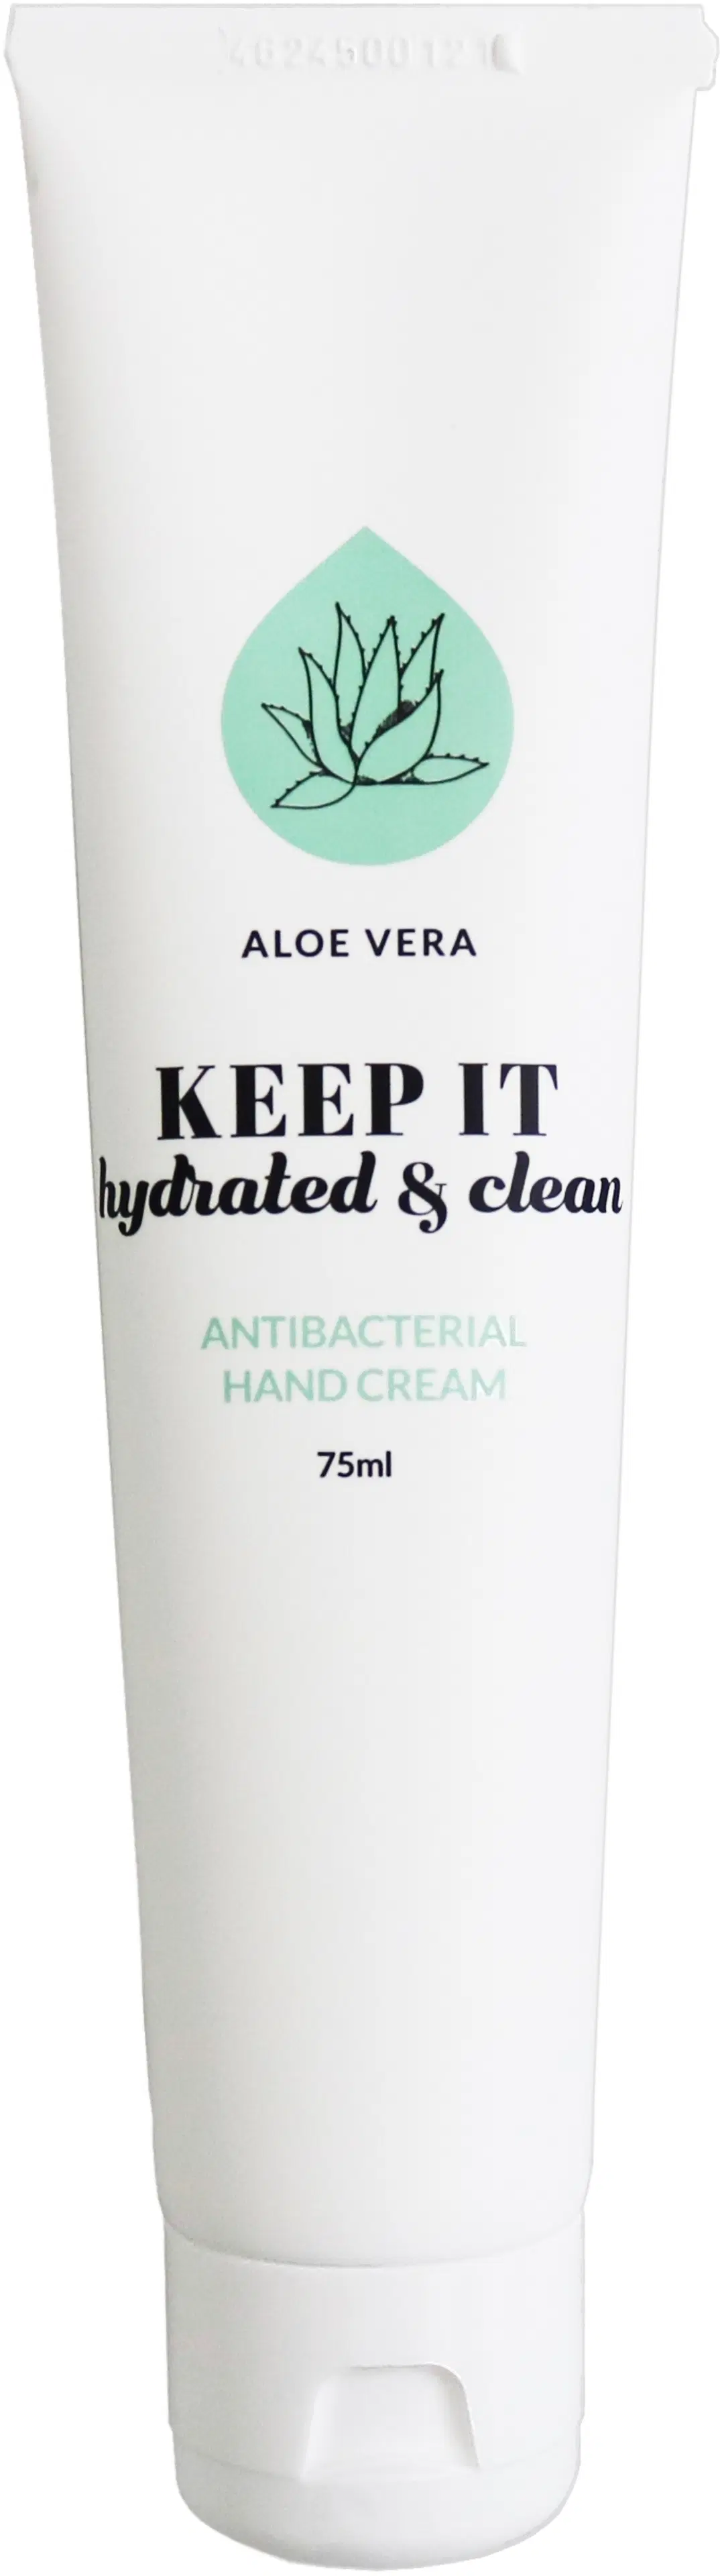 KEEP IT hydrated & Clean Aloe Vera käsivoide antibakteerisilla ominaisuuksilla 75ml